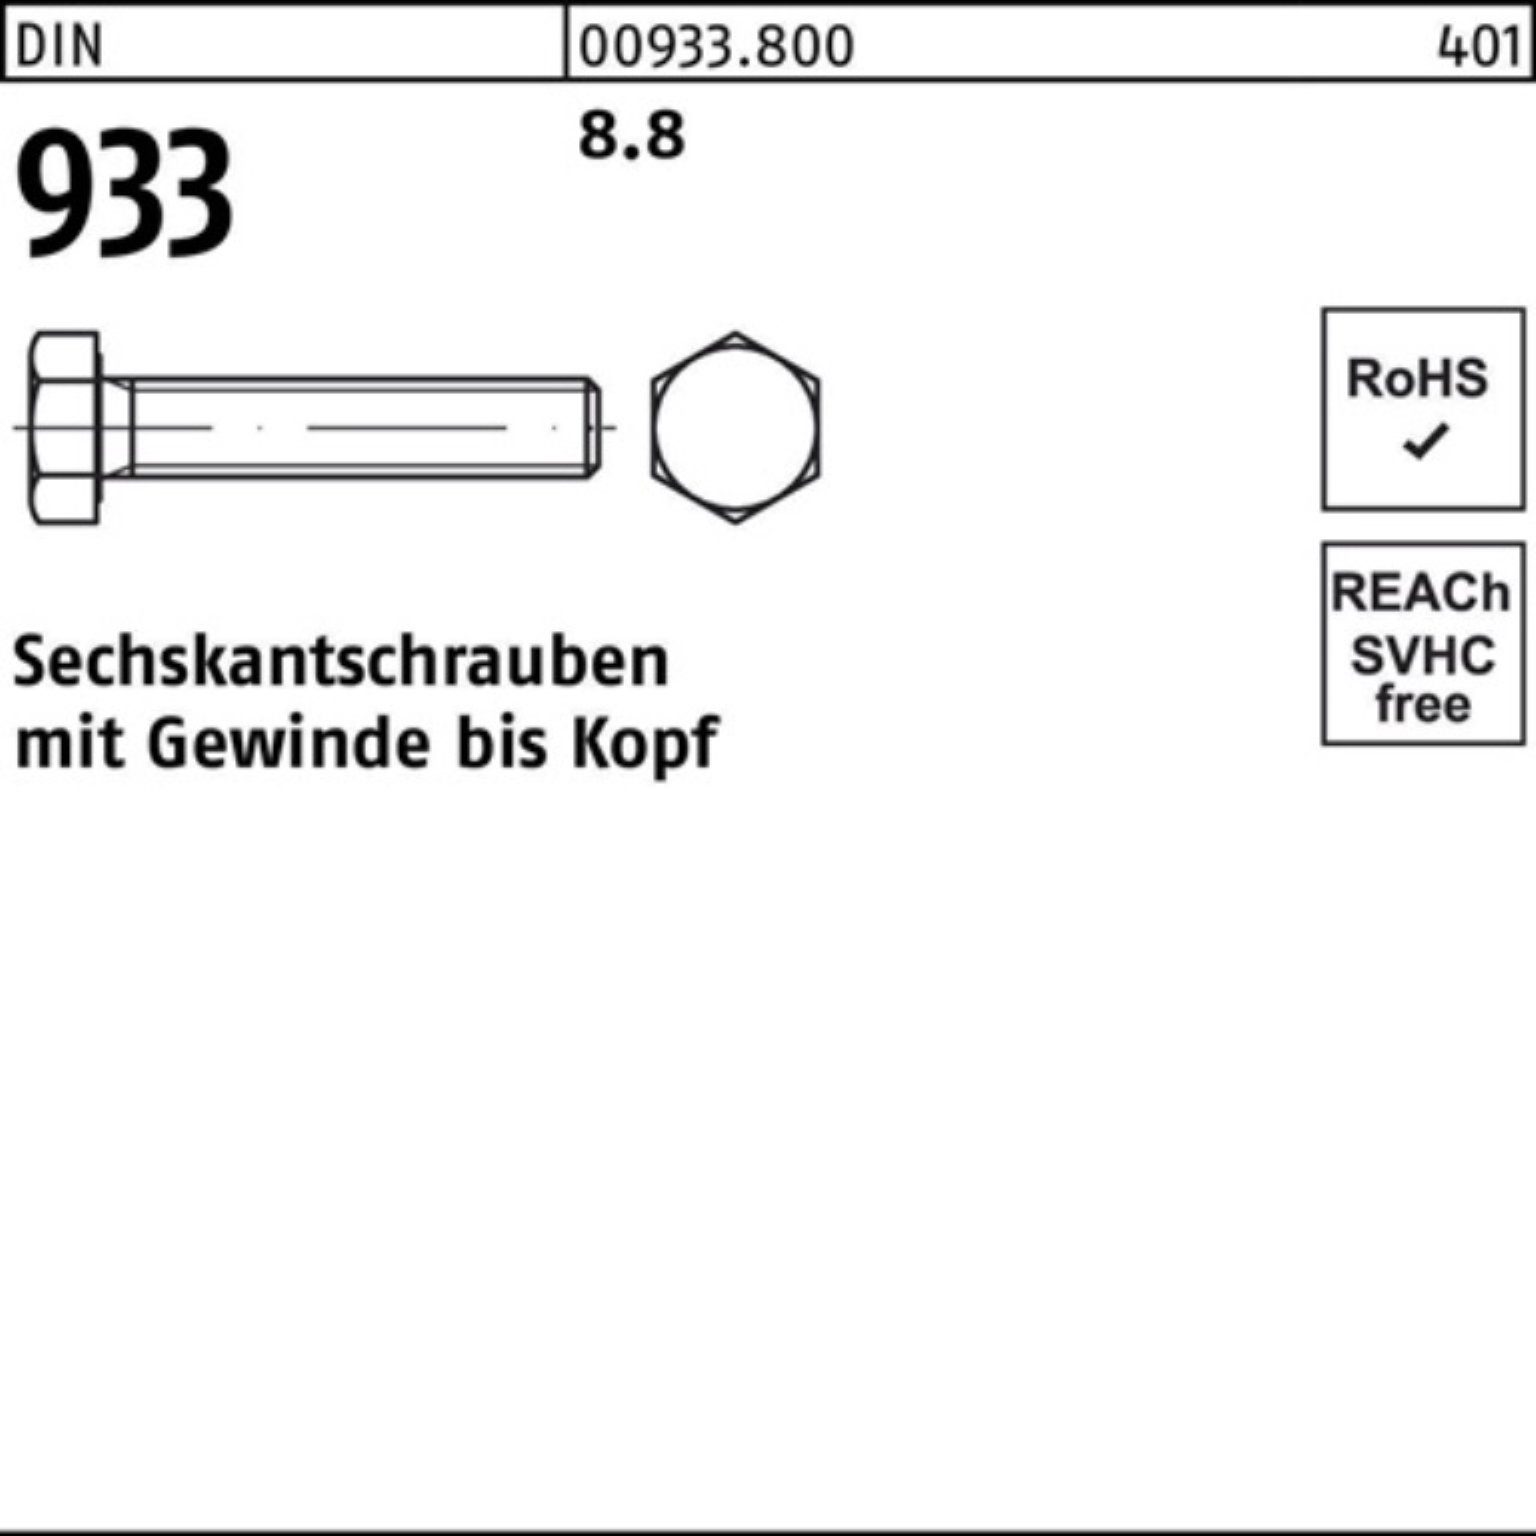 Reyher Sechskantschraube 933 Sechskantschraube M27x Pack 100er DIN DIN 933 150 VG 8.8 1 Stück